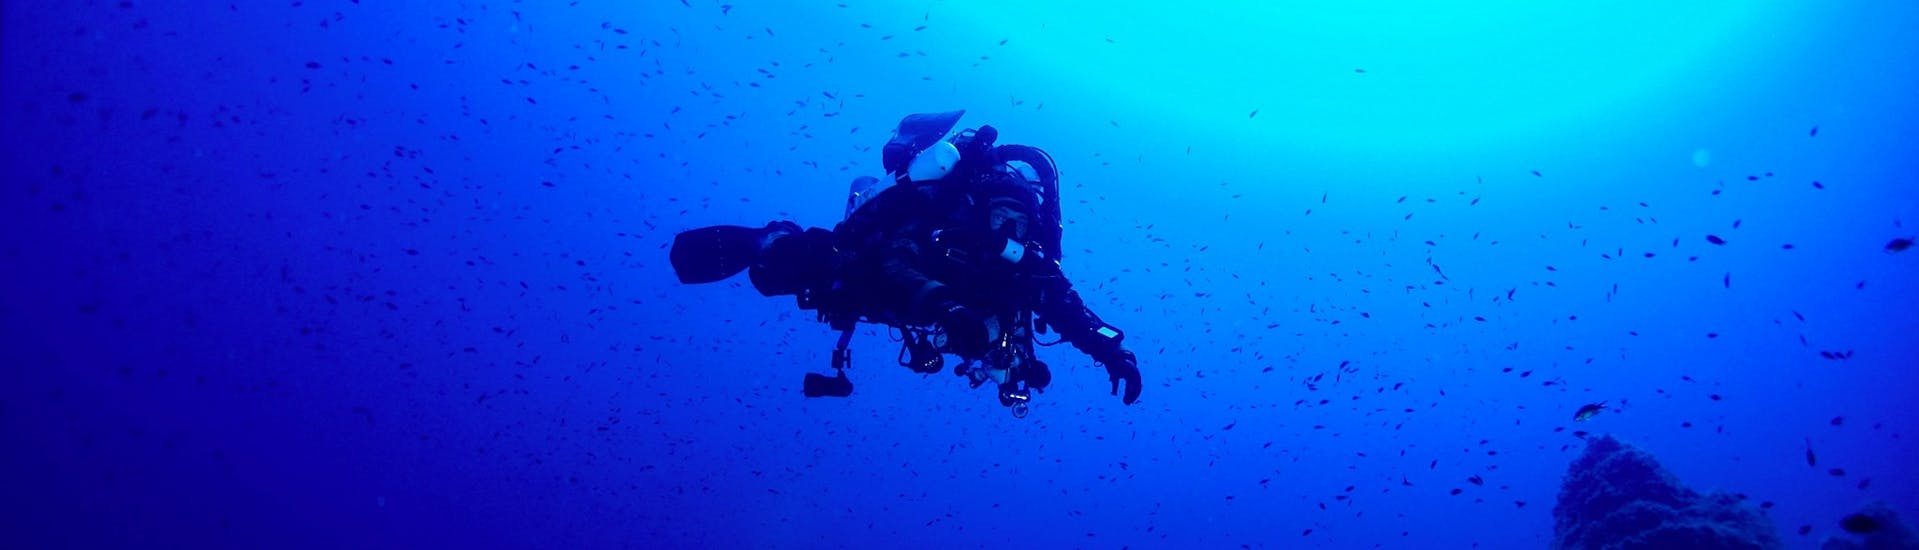 Immersioni subacquee guidate nell'arcipelago de La Maddalena e in Corsica.